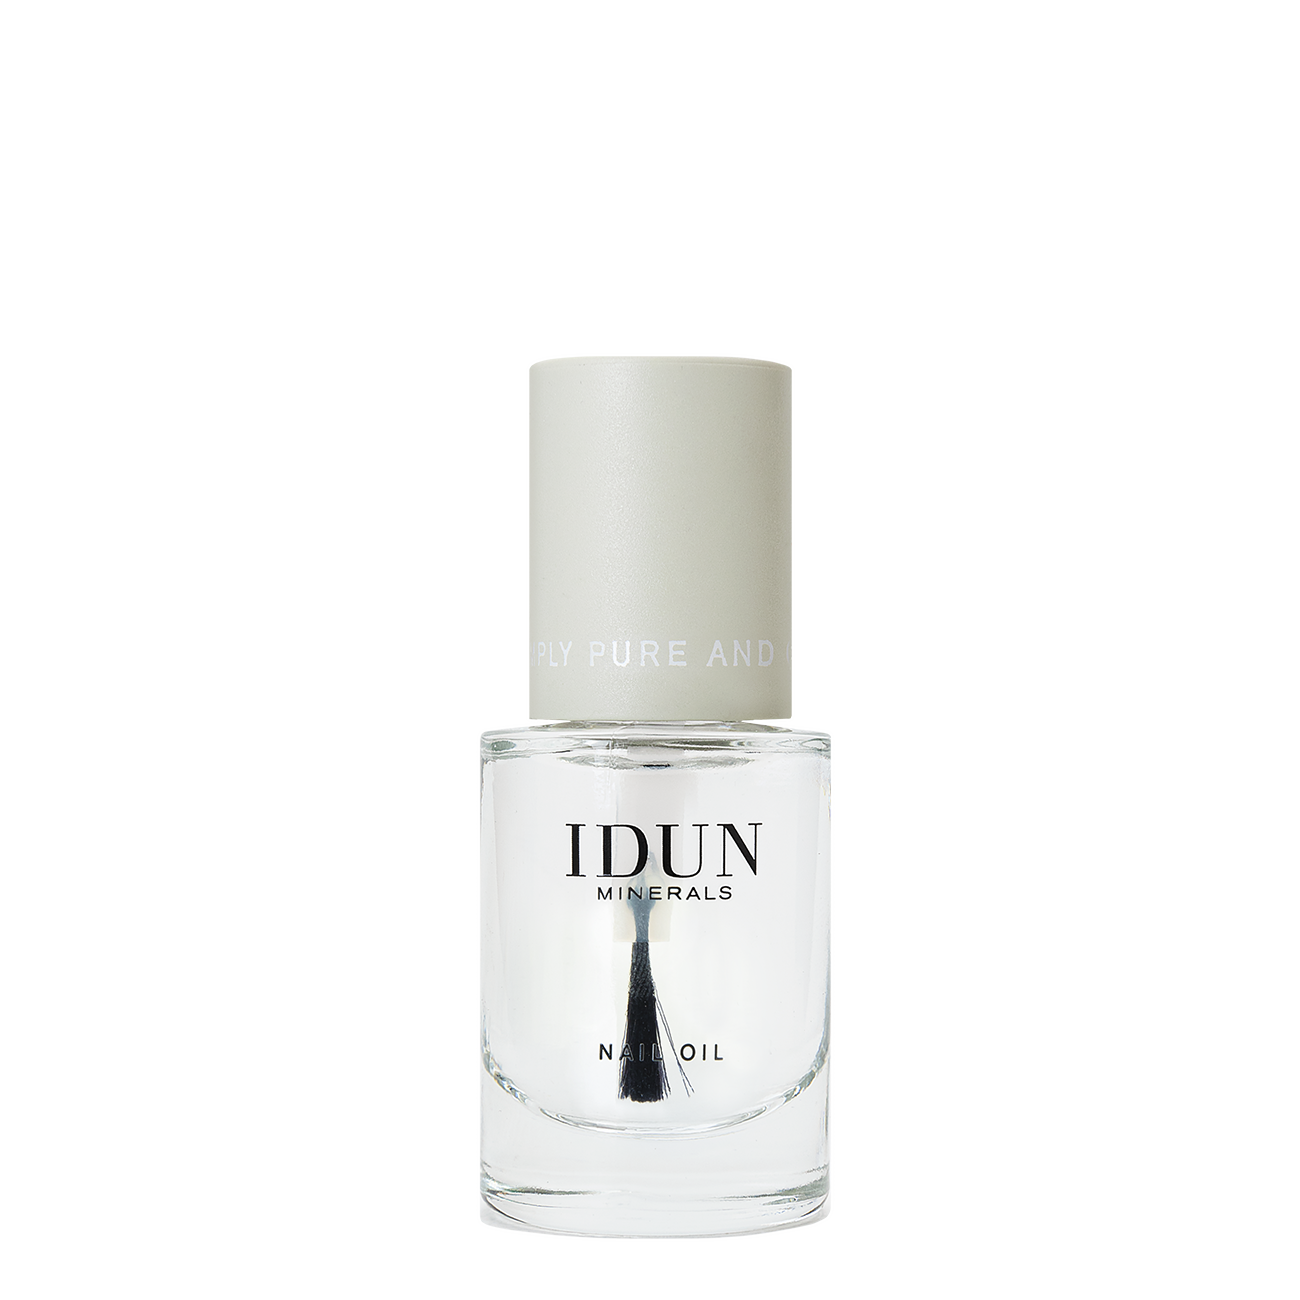 Idun Minerals Nail Oil 11 ml